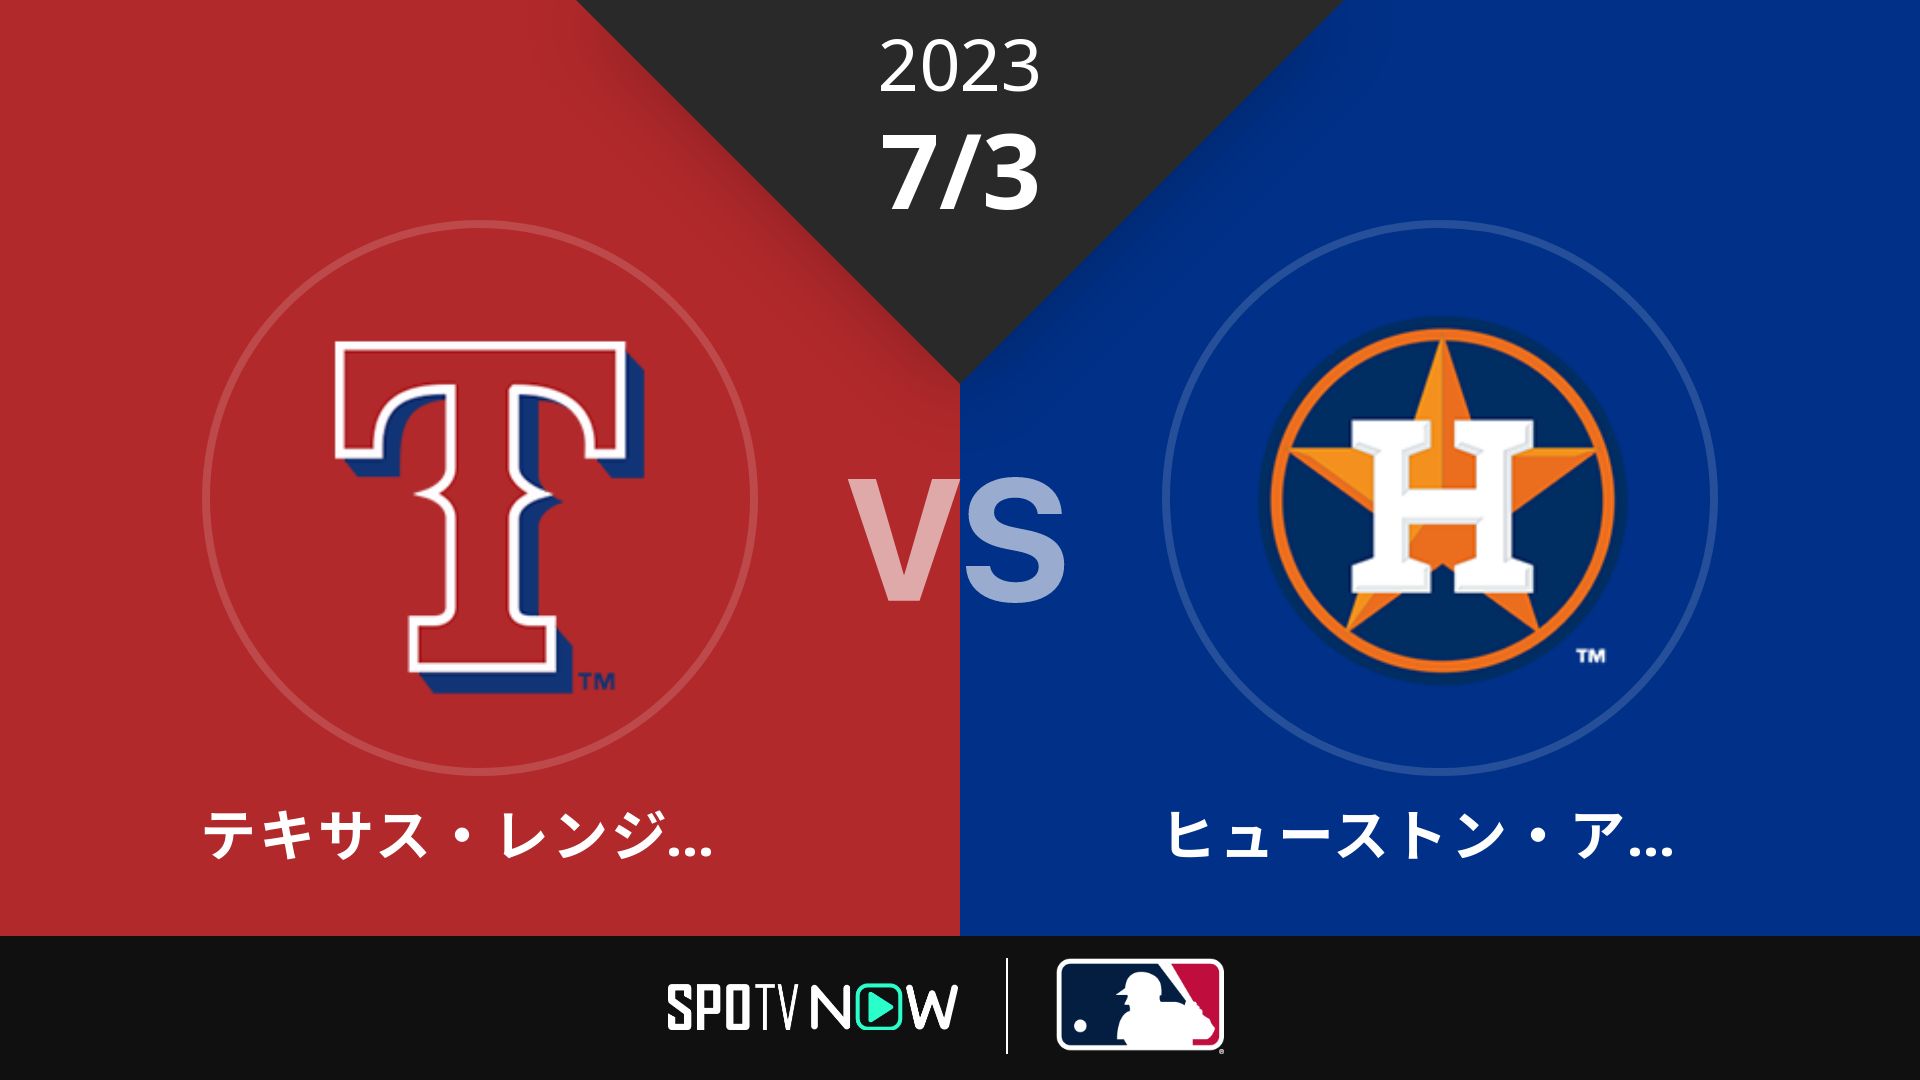 2023/7/3 レンジャーズ vs アストロズ [MLB]